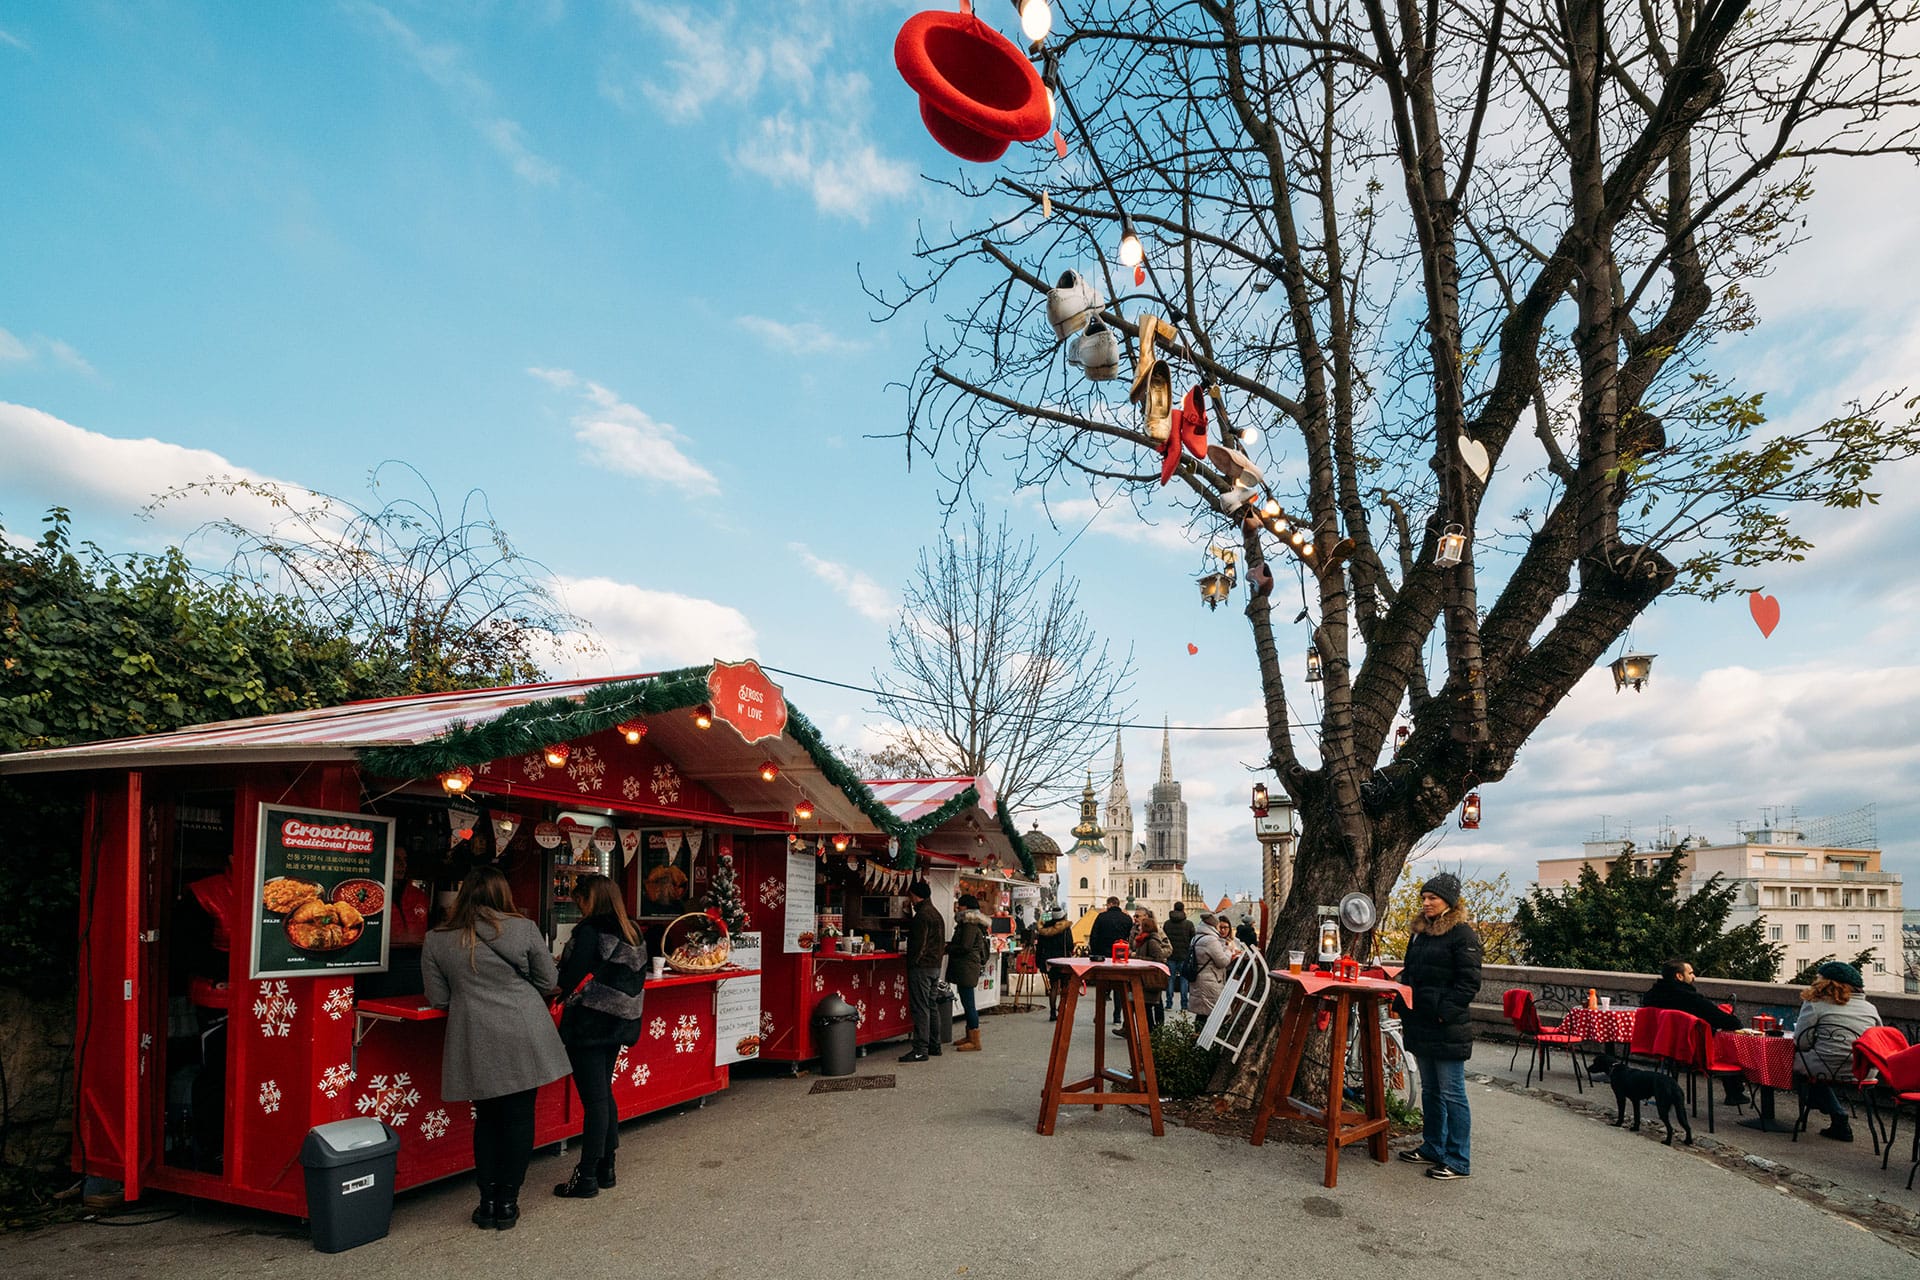 Weihnachtsmarkt in der Oberstadt: An den Ständen werden traditionelle kroatische Spezialitäten angeboten.